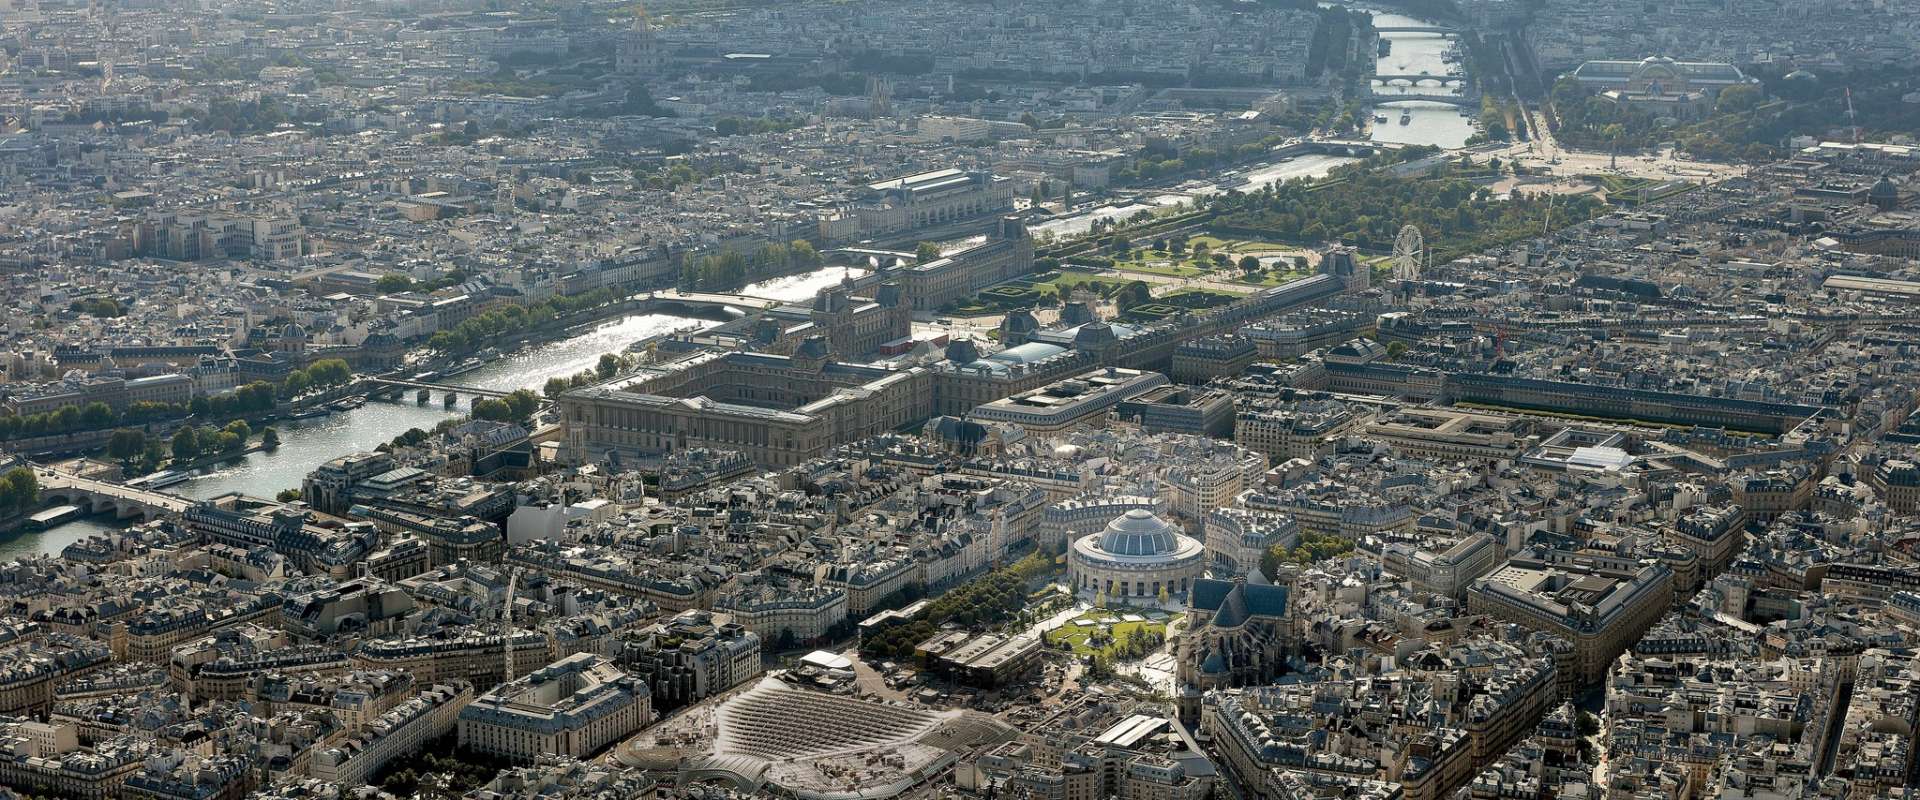 La renaissance du centre historique de Paris